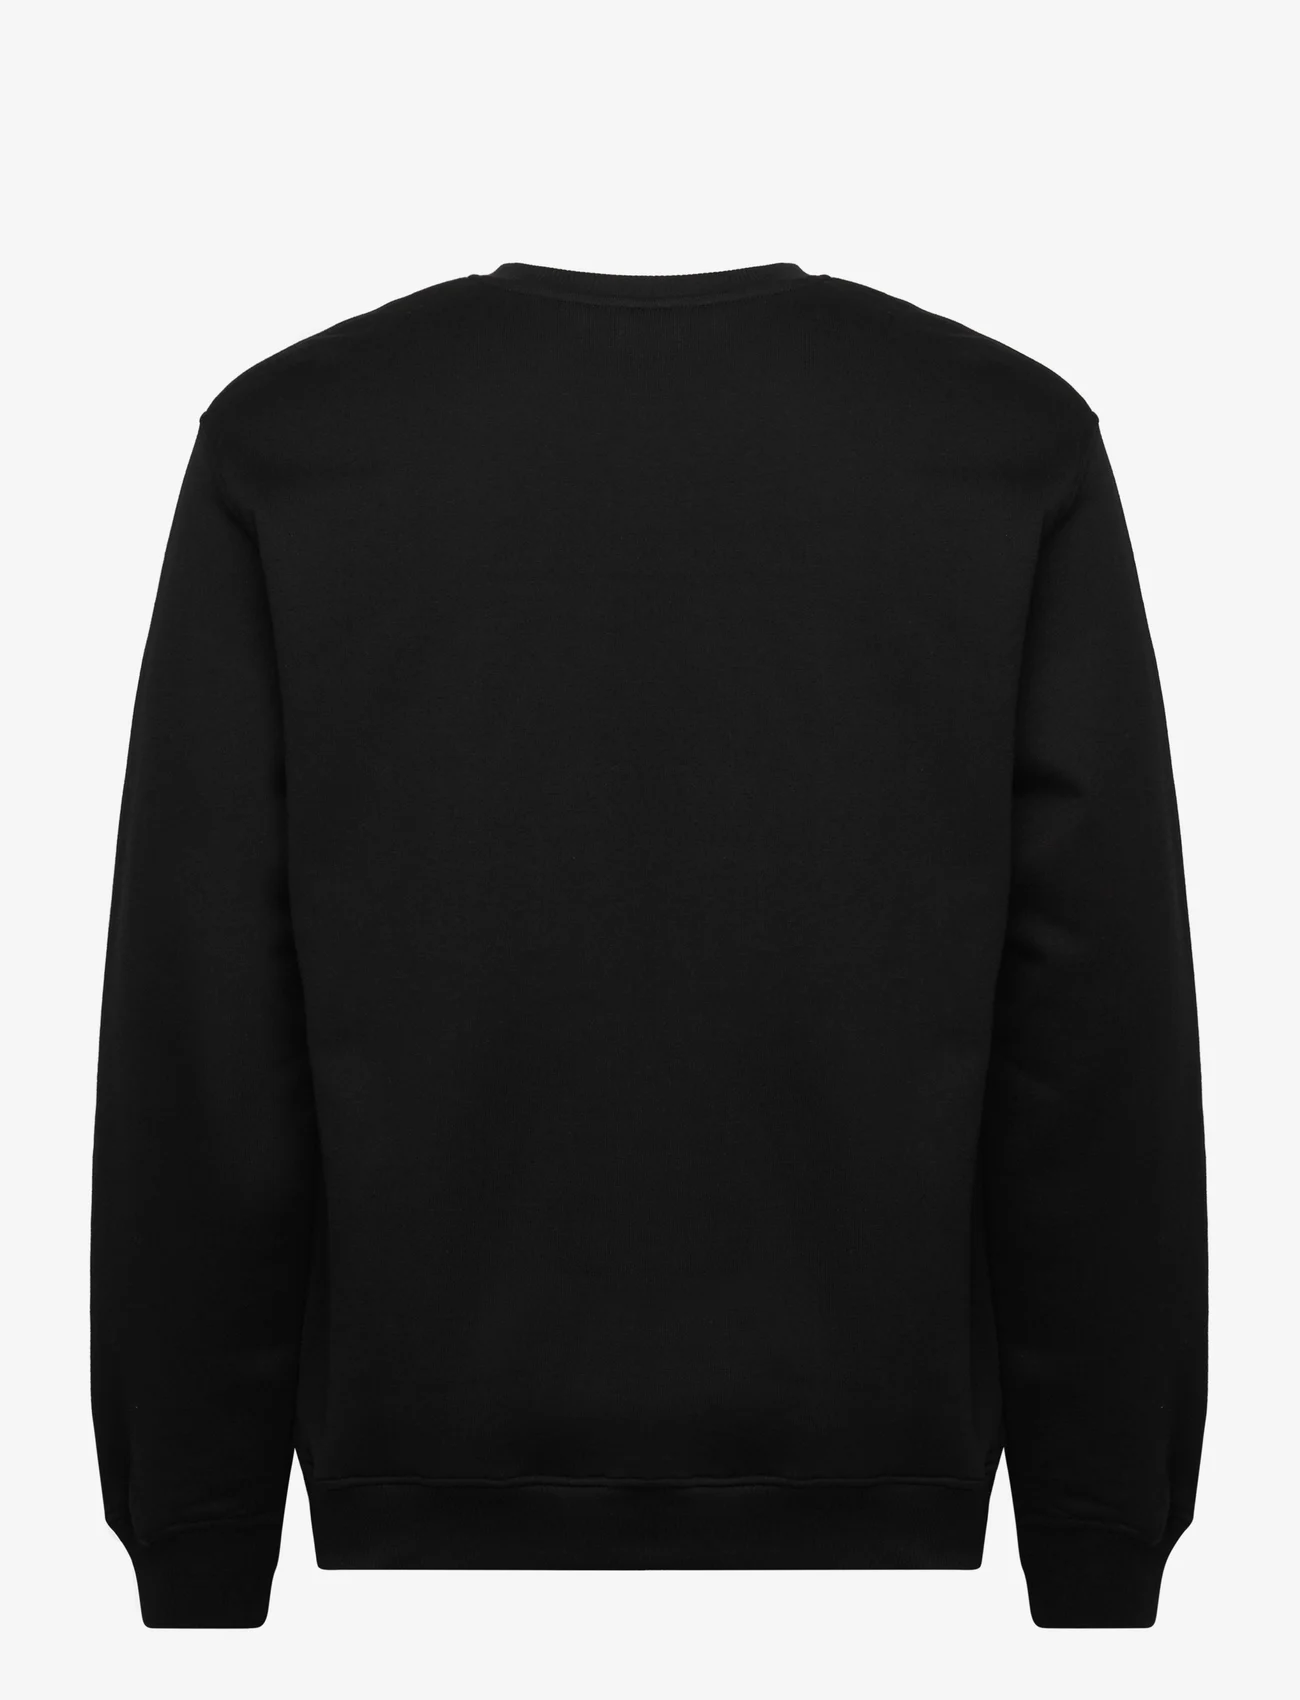 MessyWeekend - SWEATSHIRT SS23 - sweatshirts & hoodies - black - 1